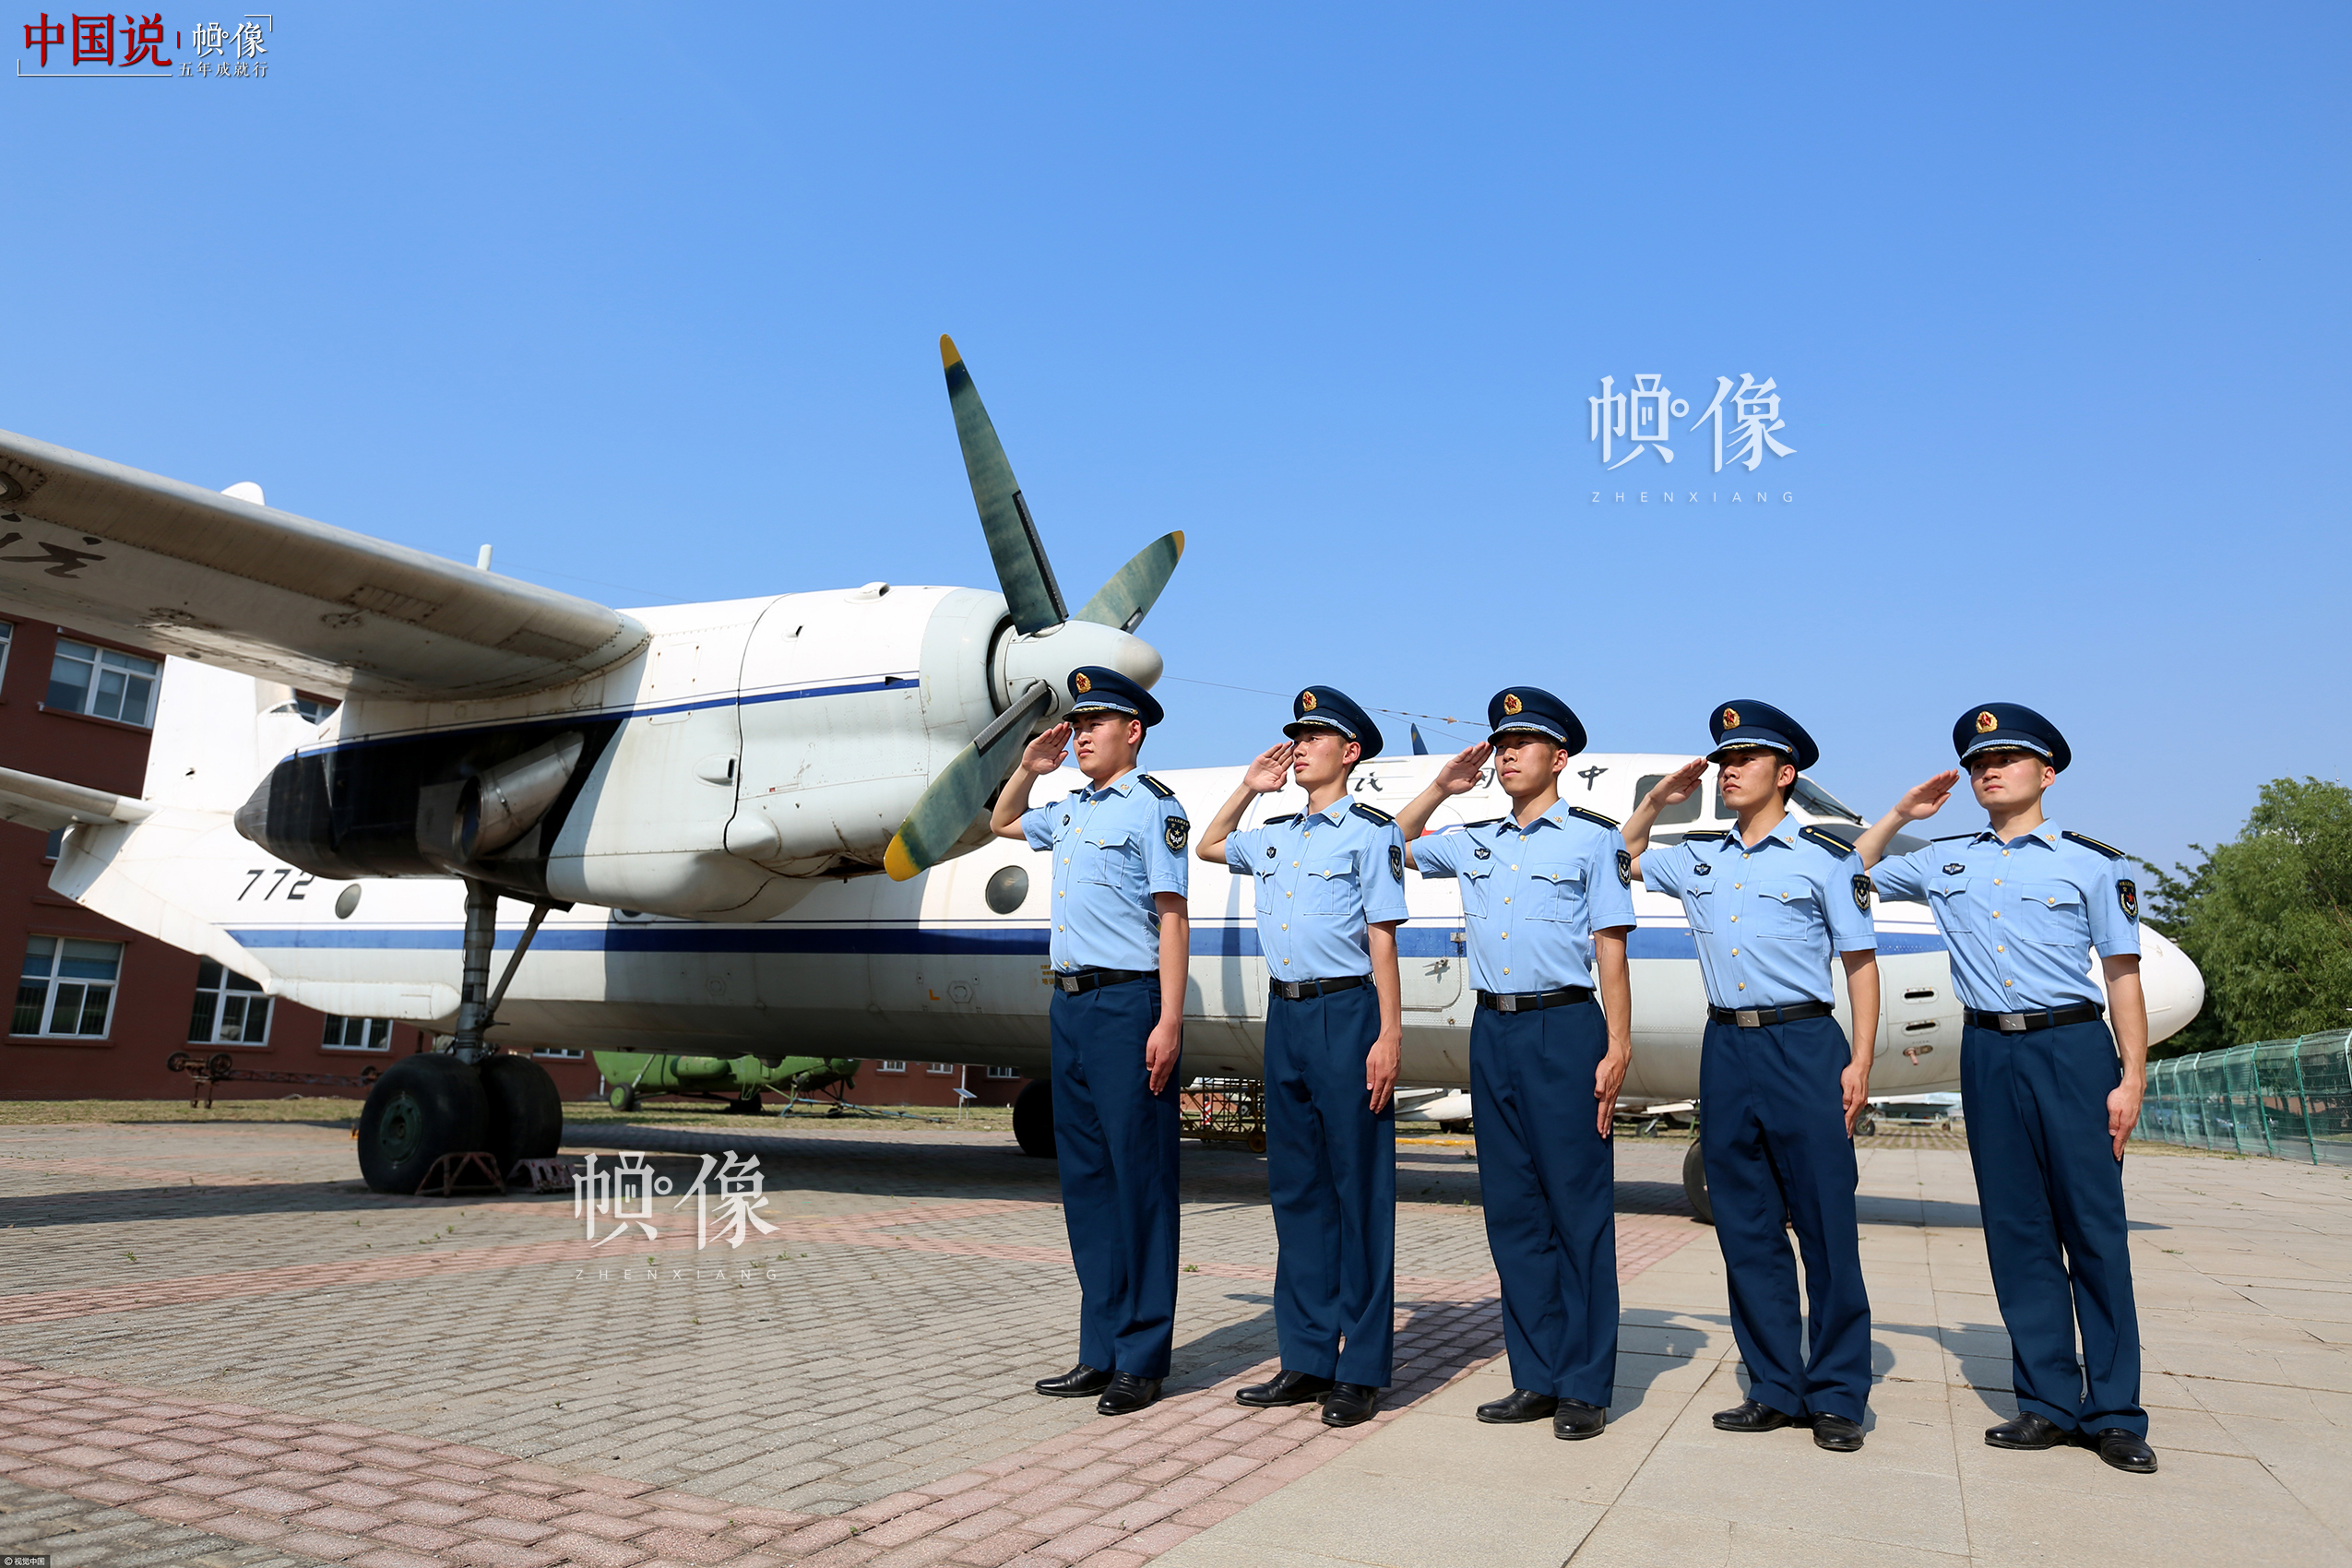 2017年6月14日，辽宁沈阳，又是一年毕业季，即将走出校门、走进军营的沈阳航空航天大学空军后备军官学院的国防毕业生们在校园中拍照留念。视觉中国供图